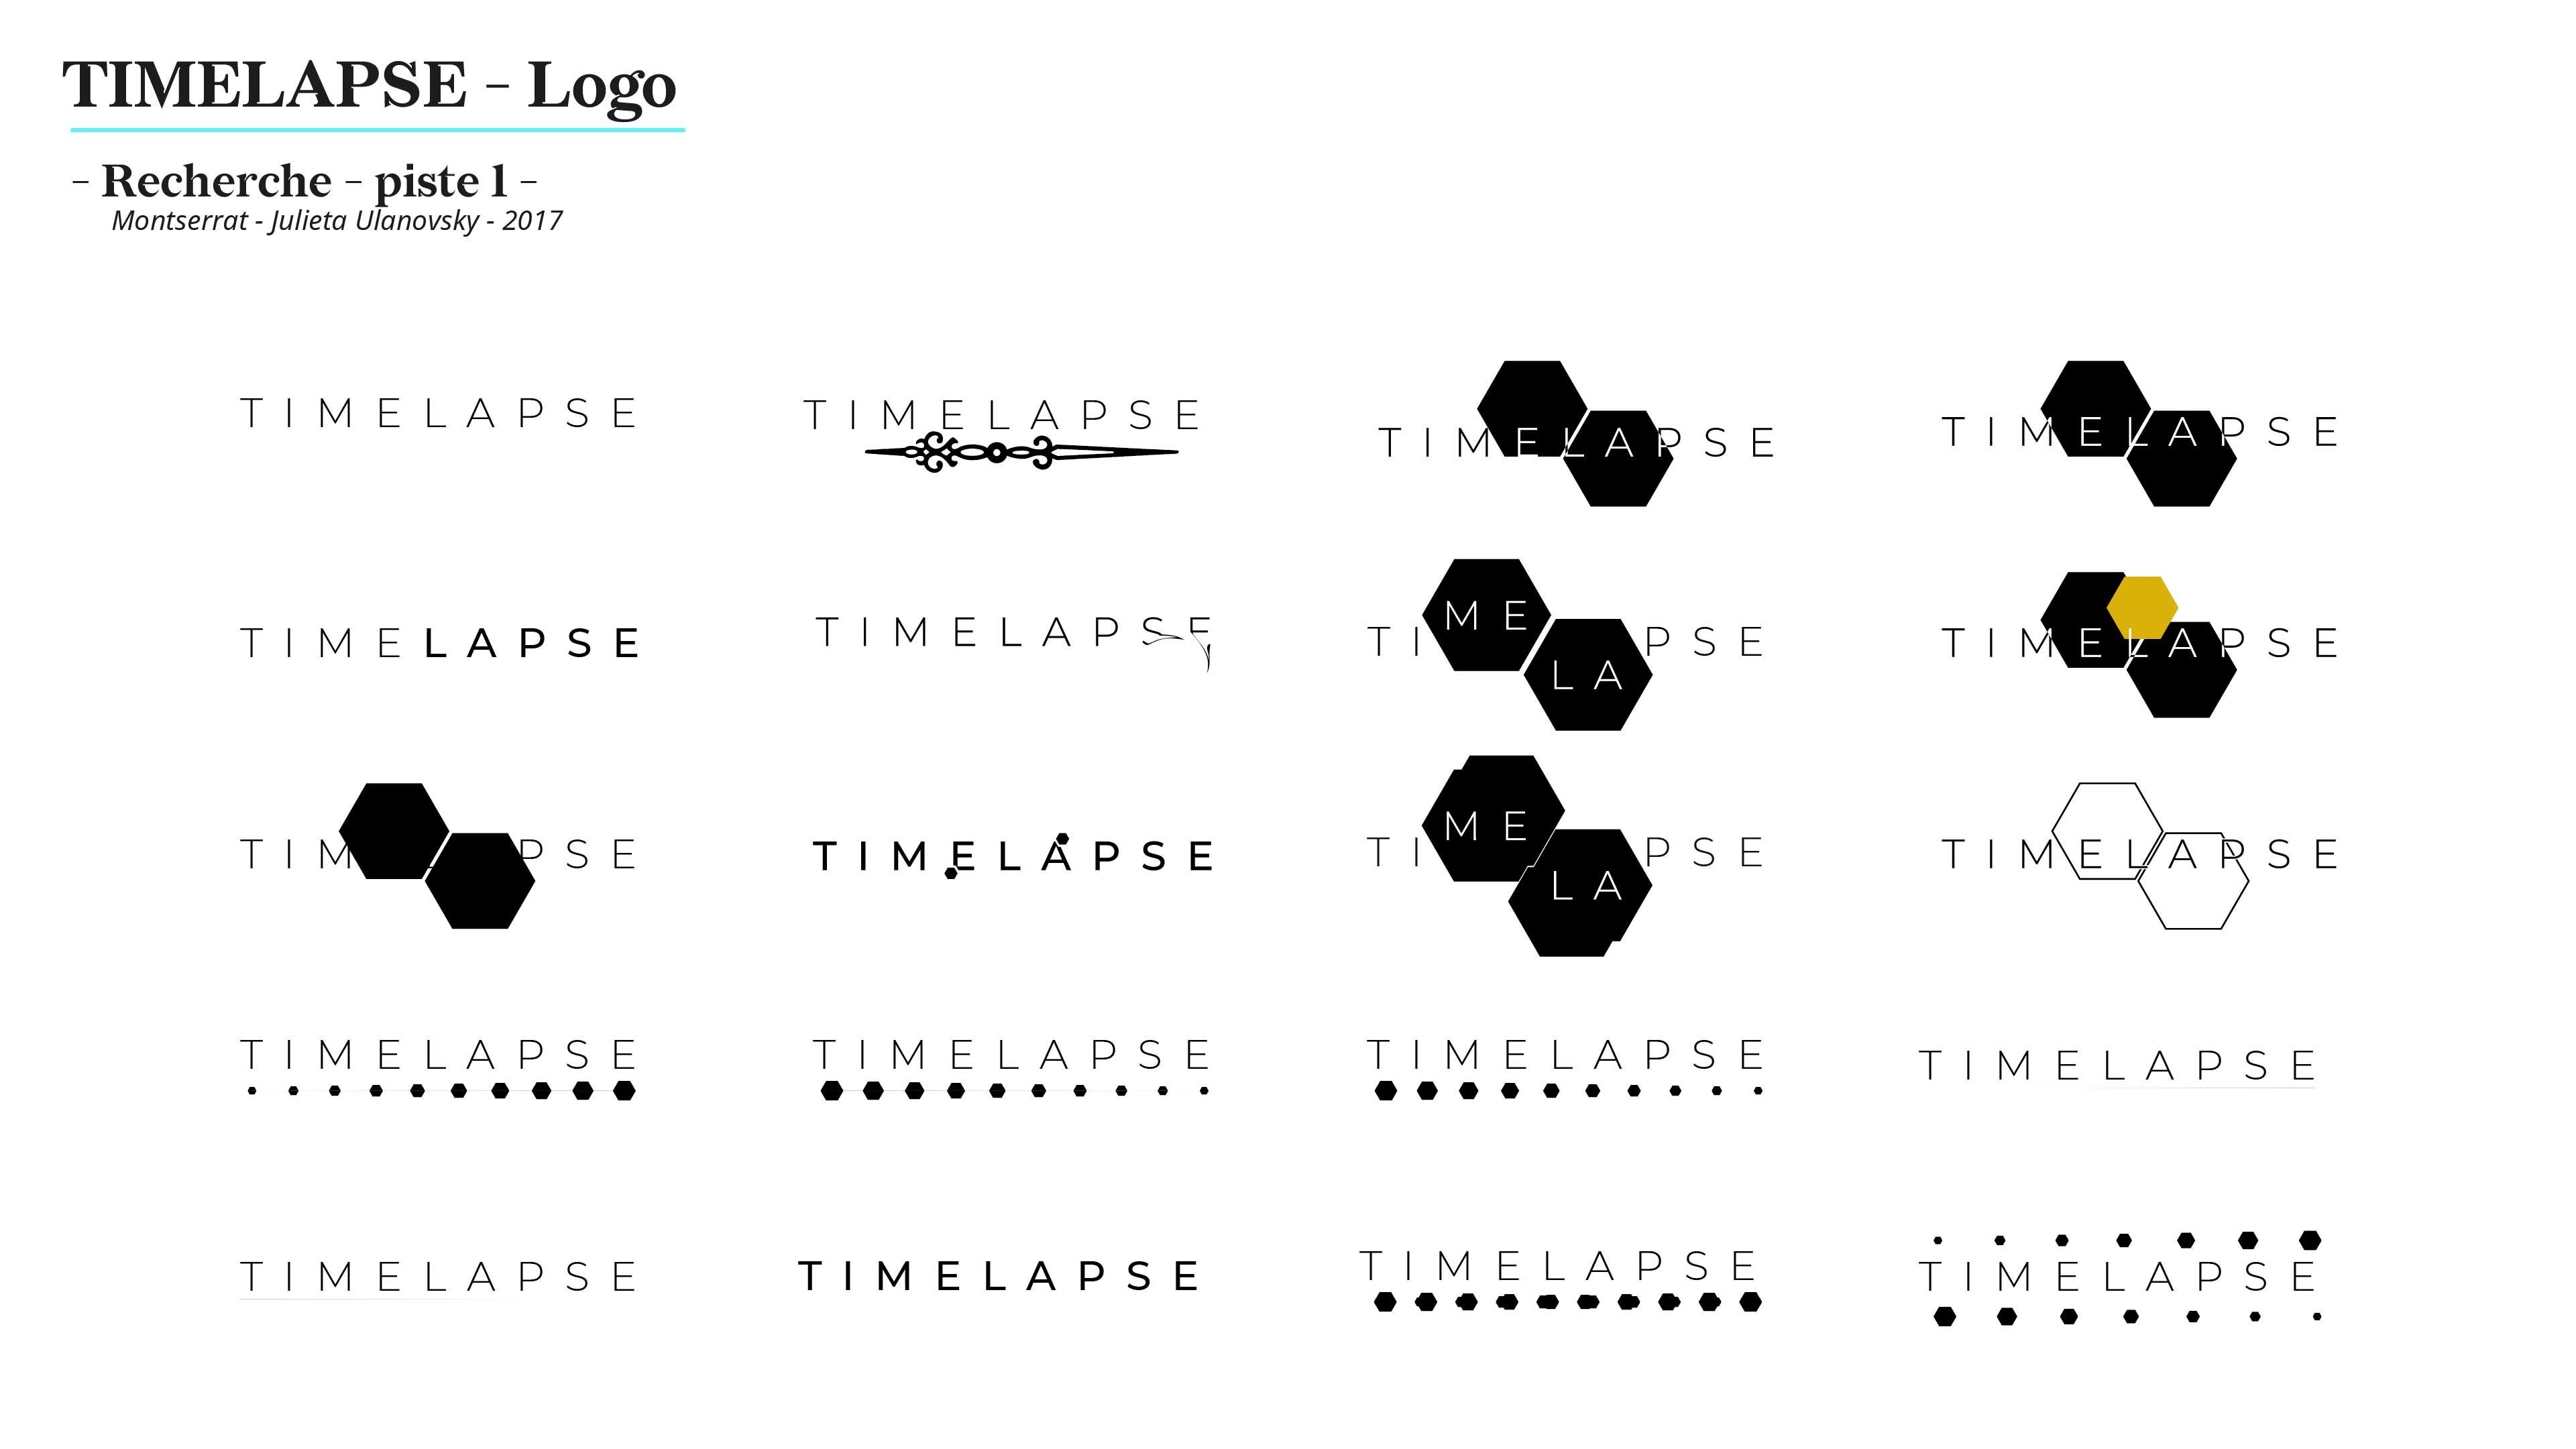 Plusieurs tentatives de logo avec le mot Timelapse